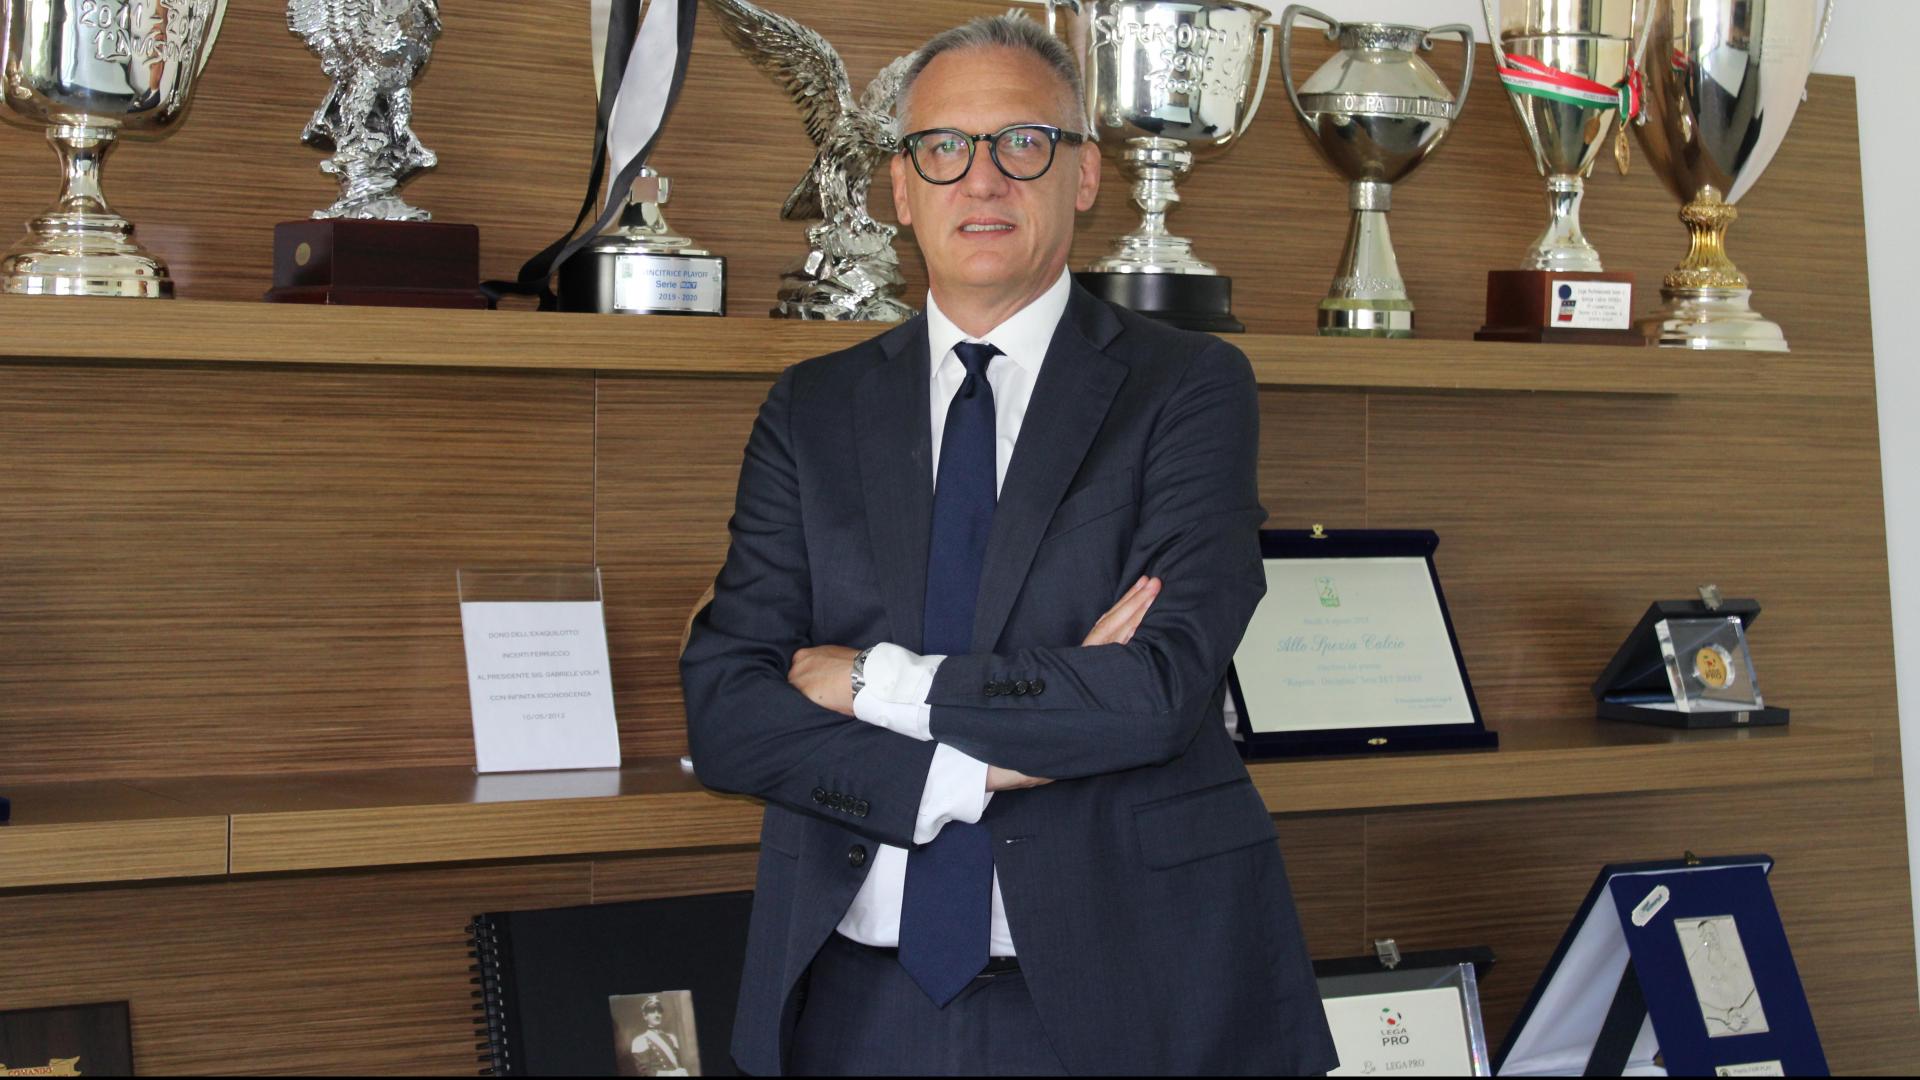 Andrea Gazzoli è il nuovo Direttore Generale dello Spezia Calcio